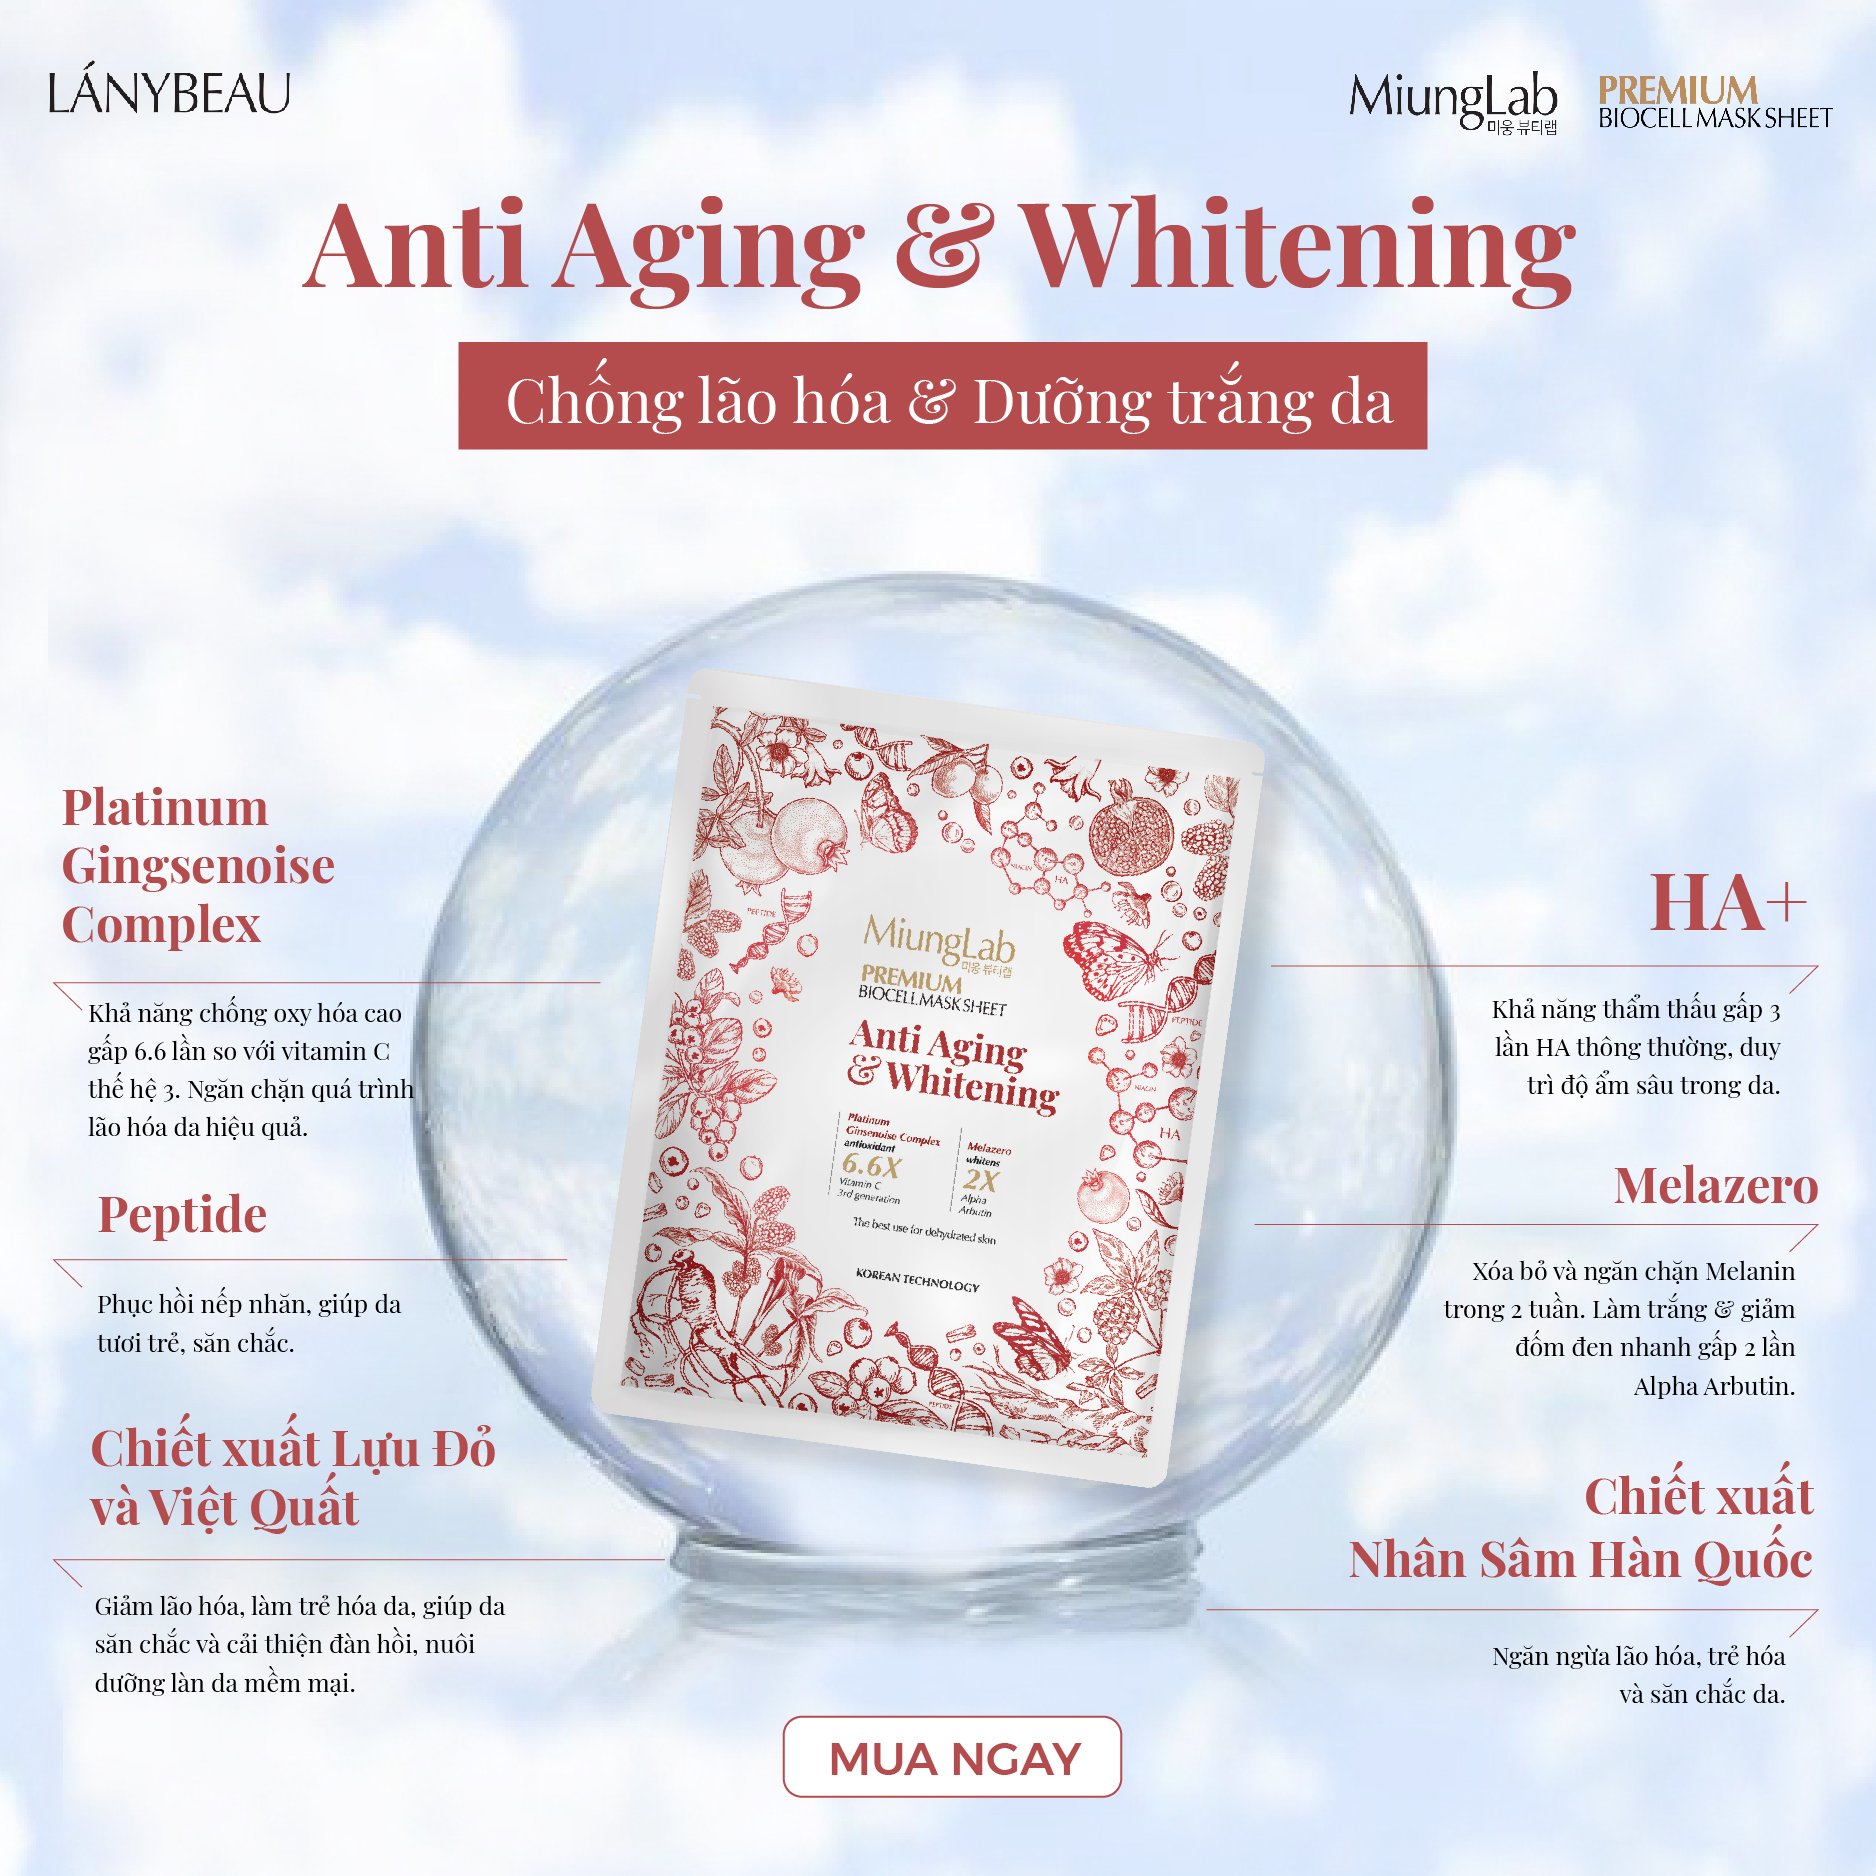 Combo 4 Mặt nạ chống lão hóa, dưỡng trắng da MiungLab Premium Anti-Aging and Whitening Biocell Mask Sheet 4x25g